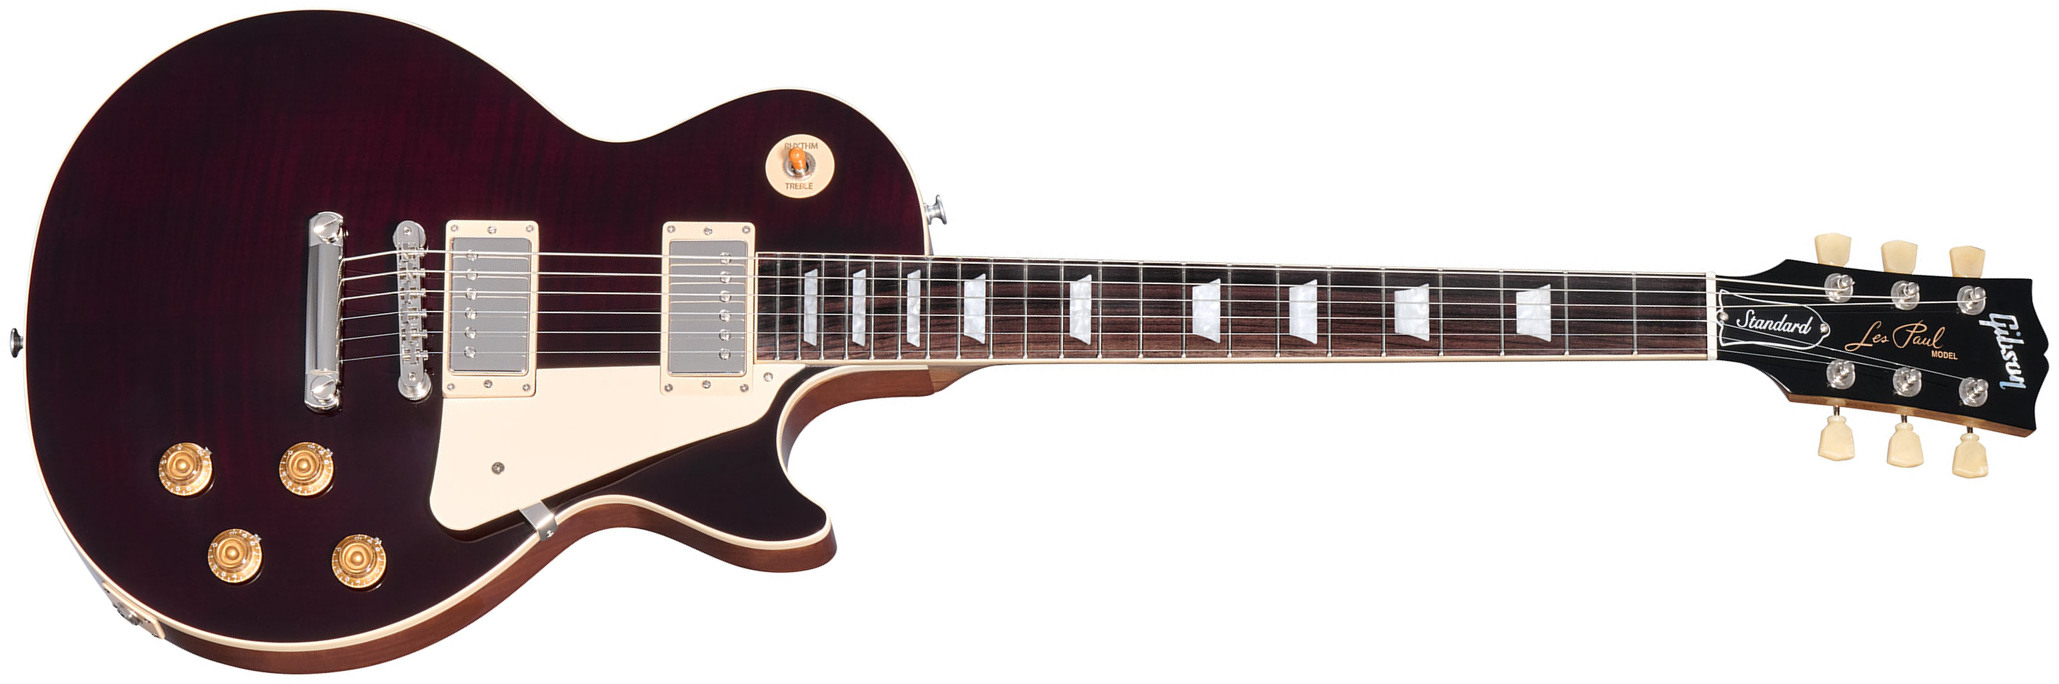 Gibson Les Paul Standard 50s Figured Custom Color 2h Ht Rw - Translucent Oxblood - Enkel gesneden elektrische gitaar - Main picture